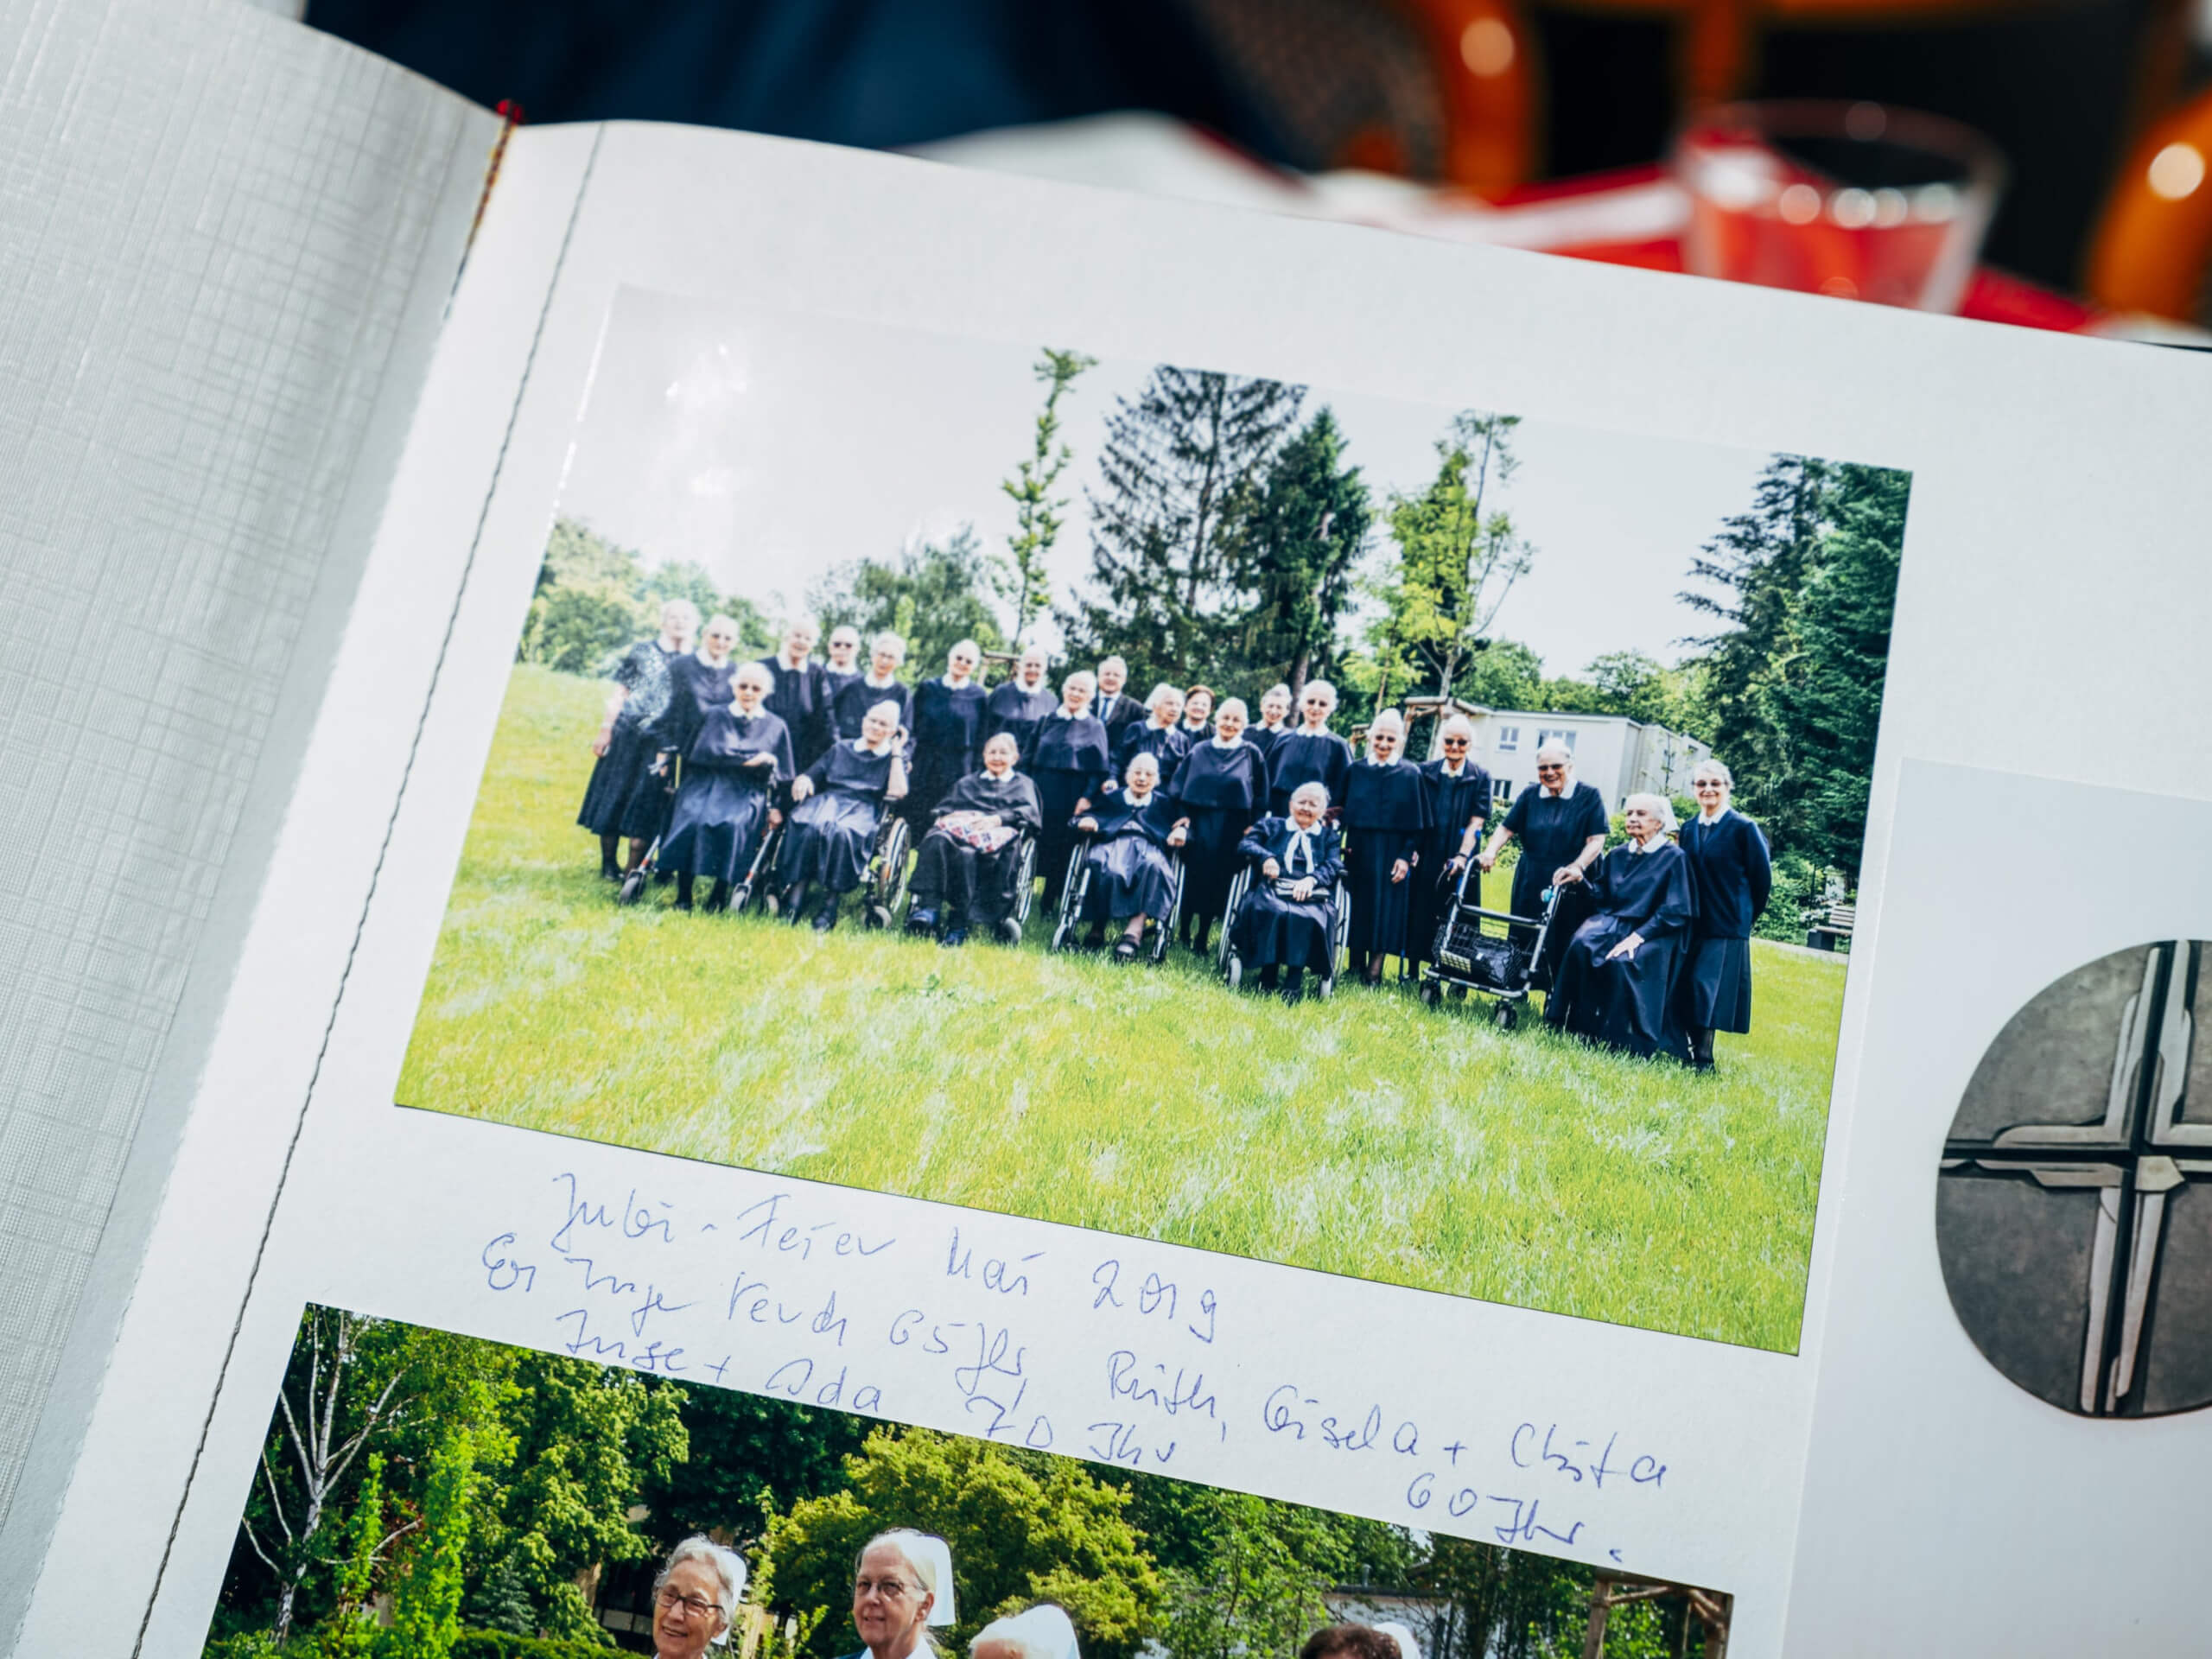 Ein Gruppenbild zeigt die Bethel Diakonissen aus Berlin in ihrer blauen Tracht der Diakonie